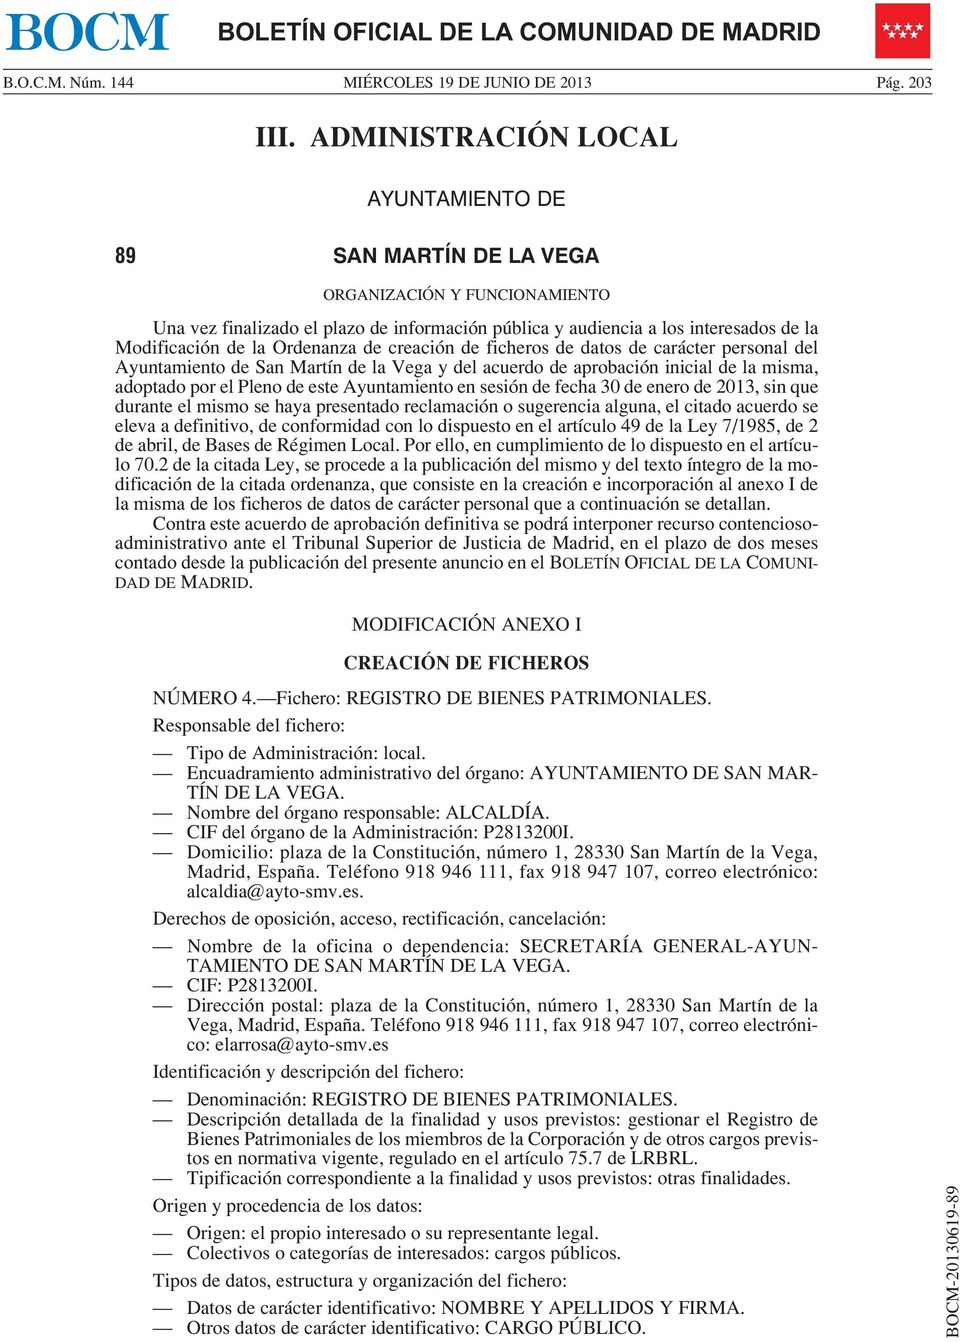 Ordenanza de creación de ficheros de datos de carácter personal del Ayuntamiento de San Martín de la Vega y del acuerdo de aprobación inicial de la misma, adoptado por el Pleno de este Ayuntamiento